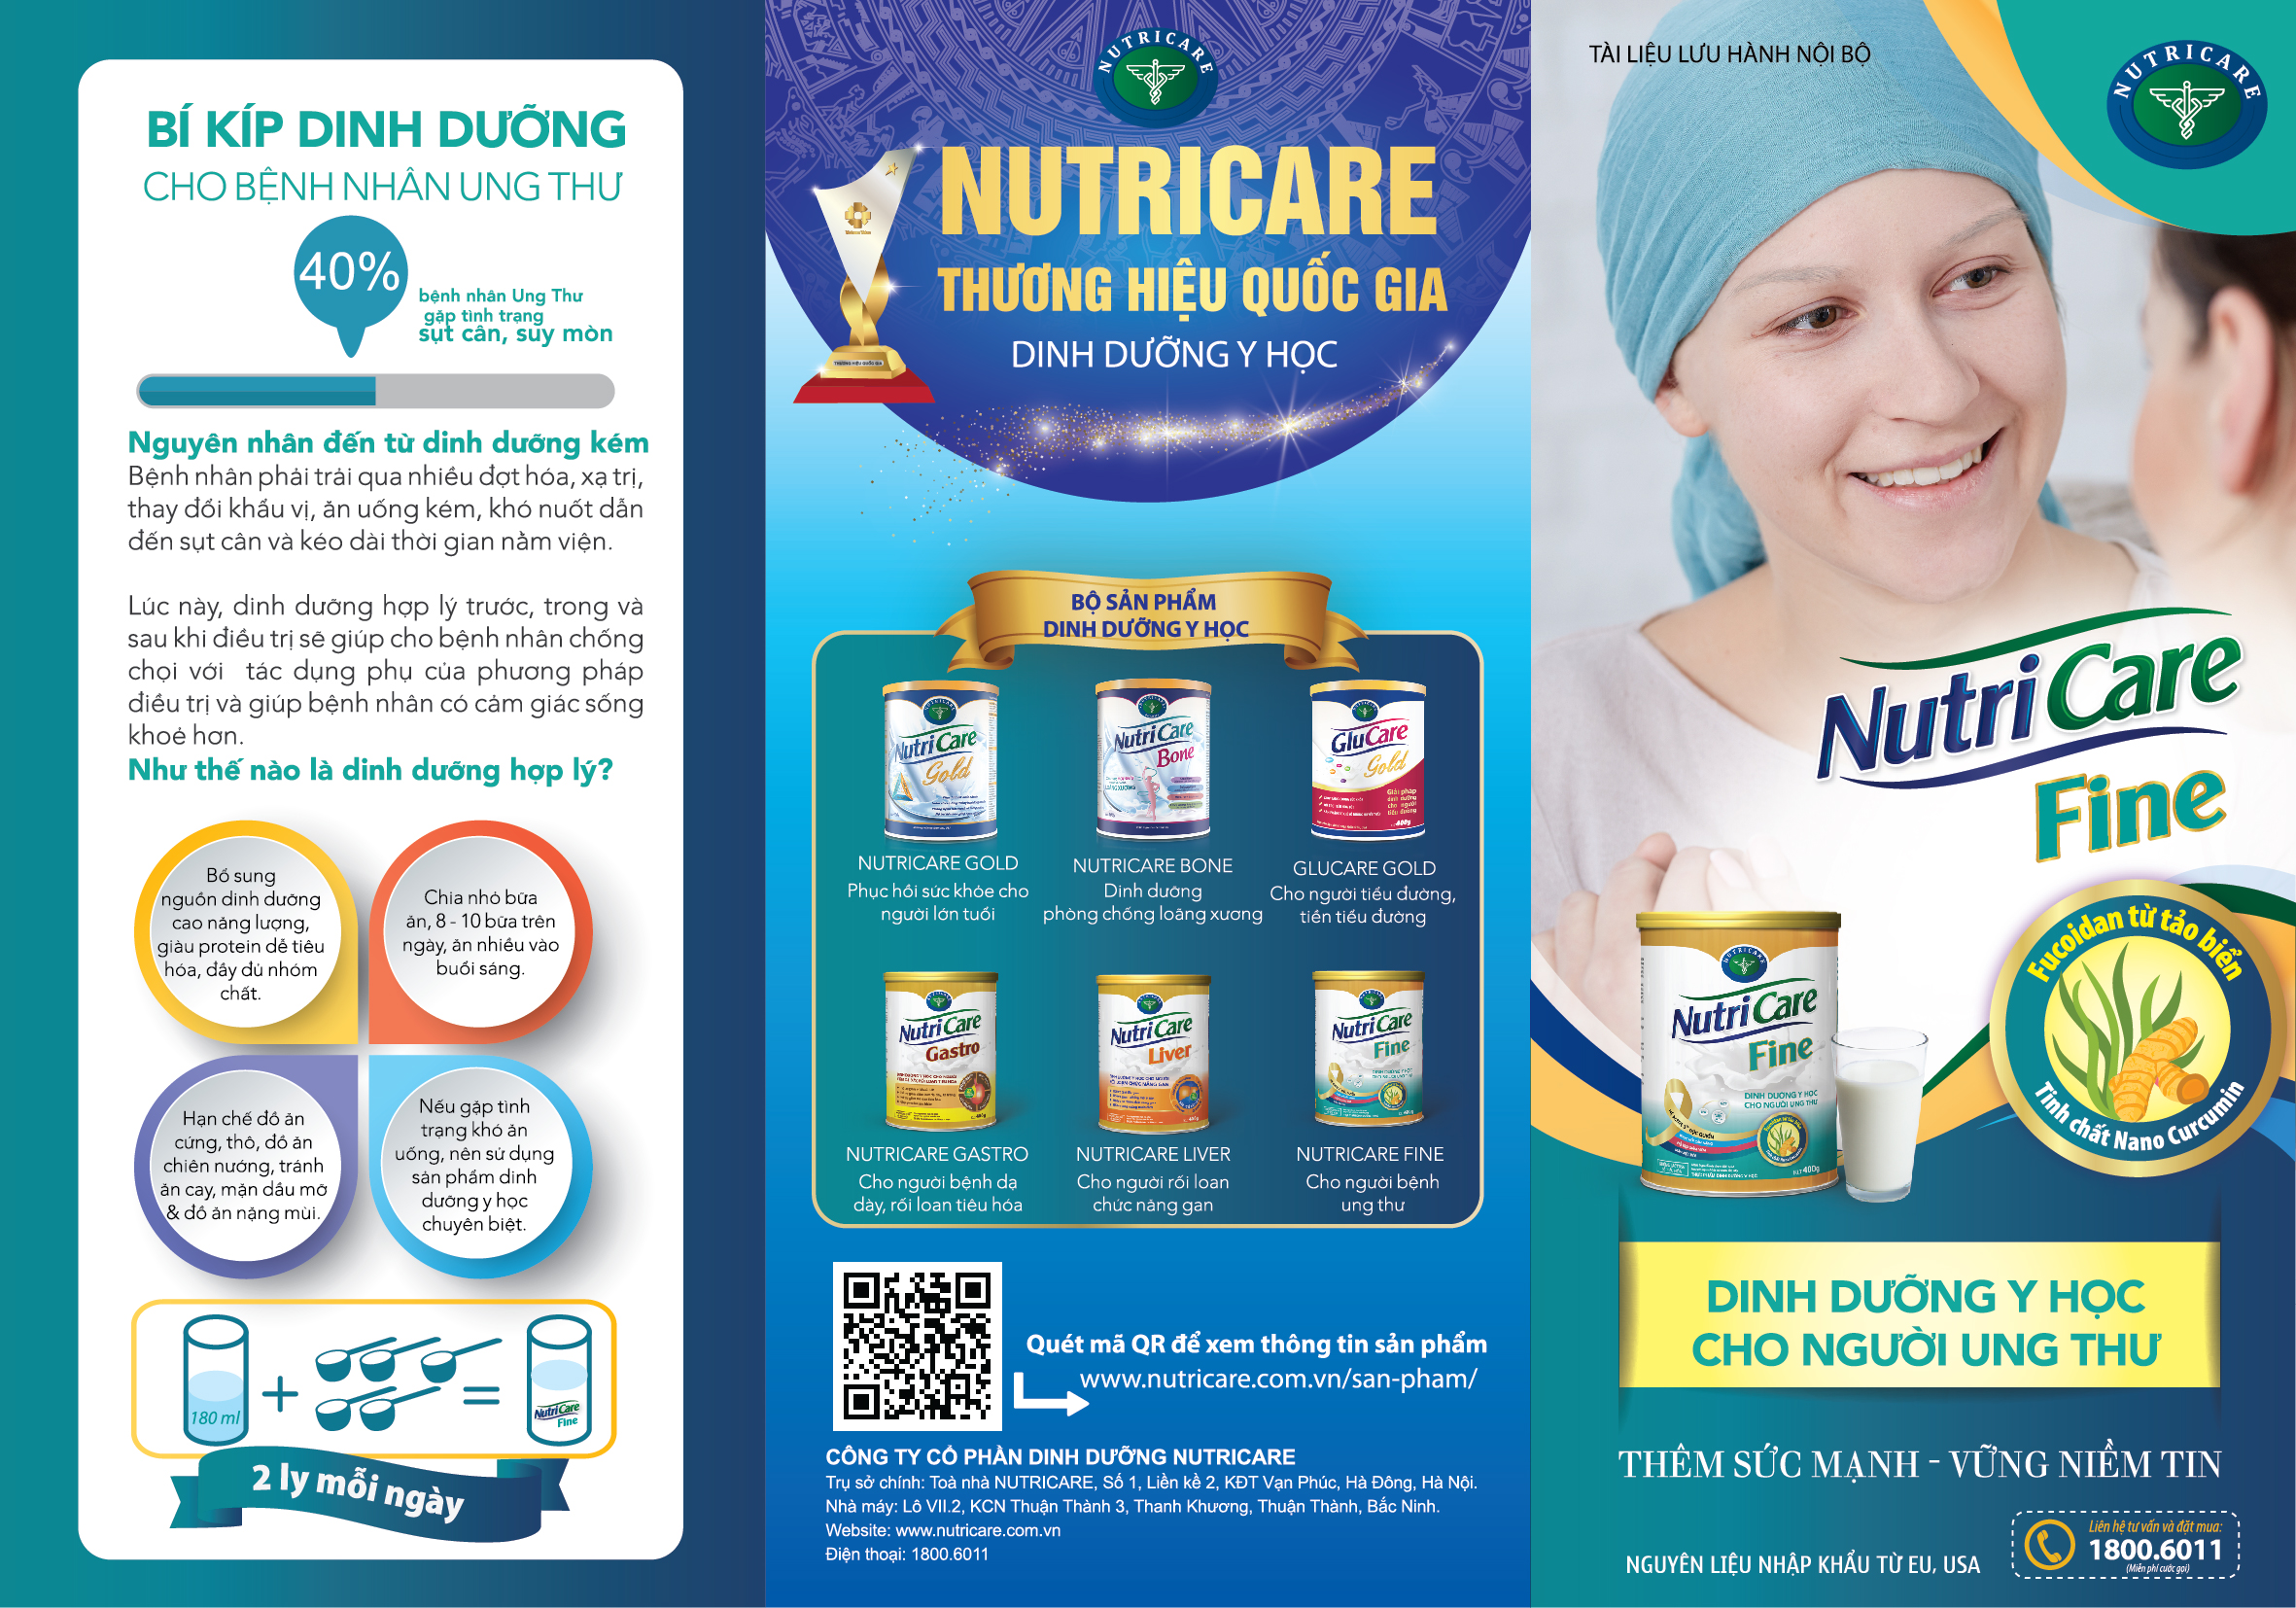 Sữa bột Nutricare Fine giúp tăng cường miễn dịch cho bệnh nhân ung thư (900g)